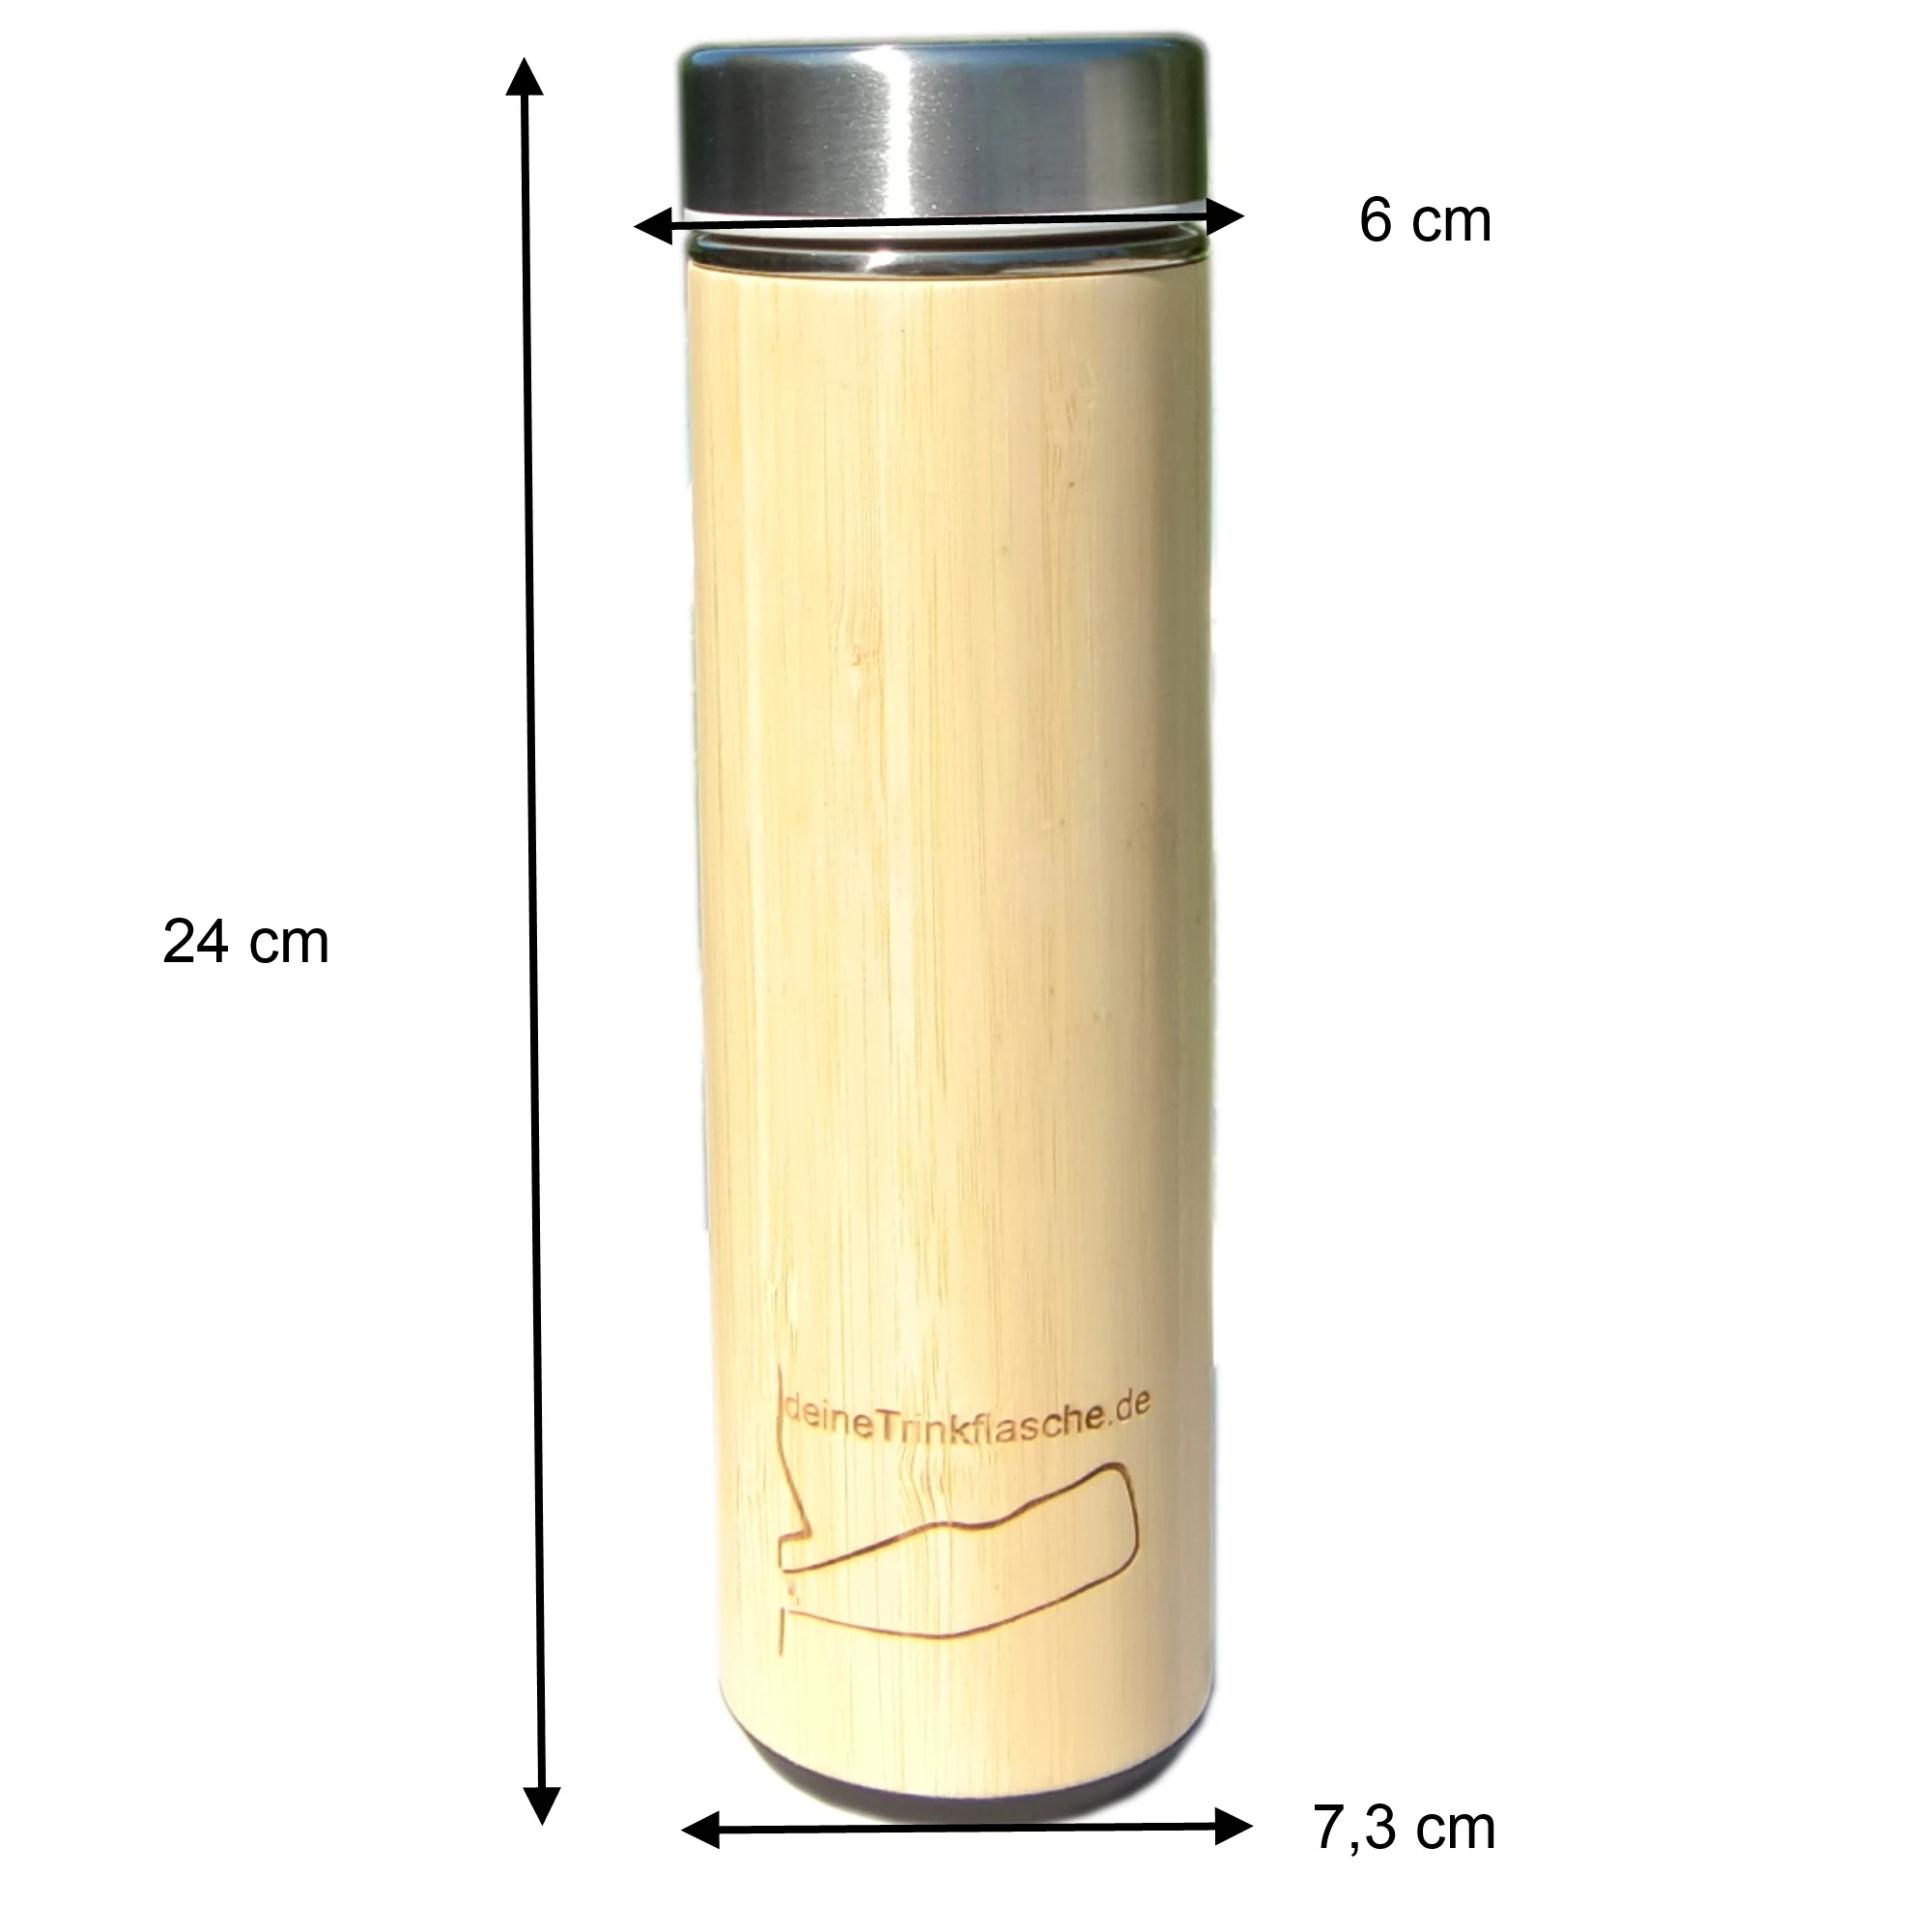 Thermosflaasche mit holzmantel mit Maßen, 24cm hoch, zylindrisch und 7,3cm breit